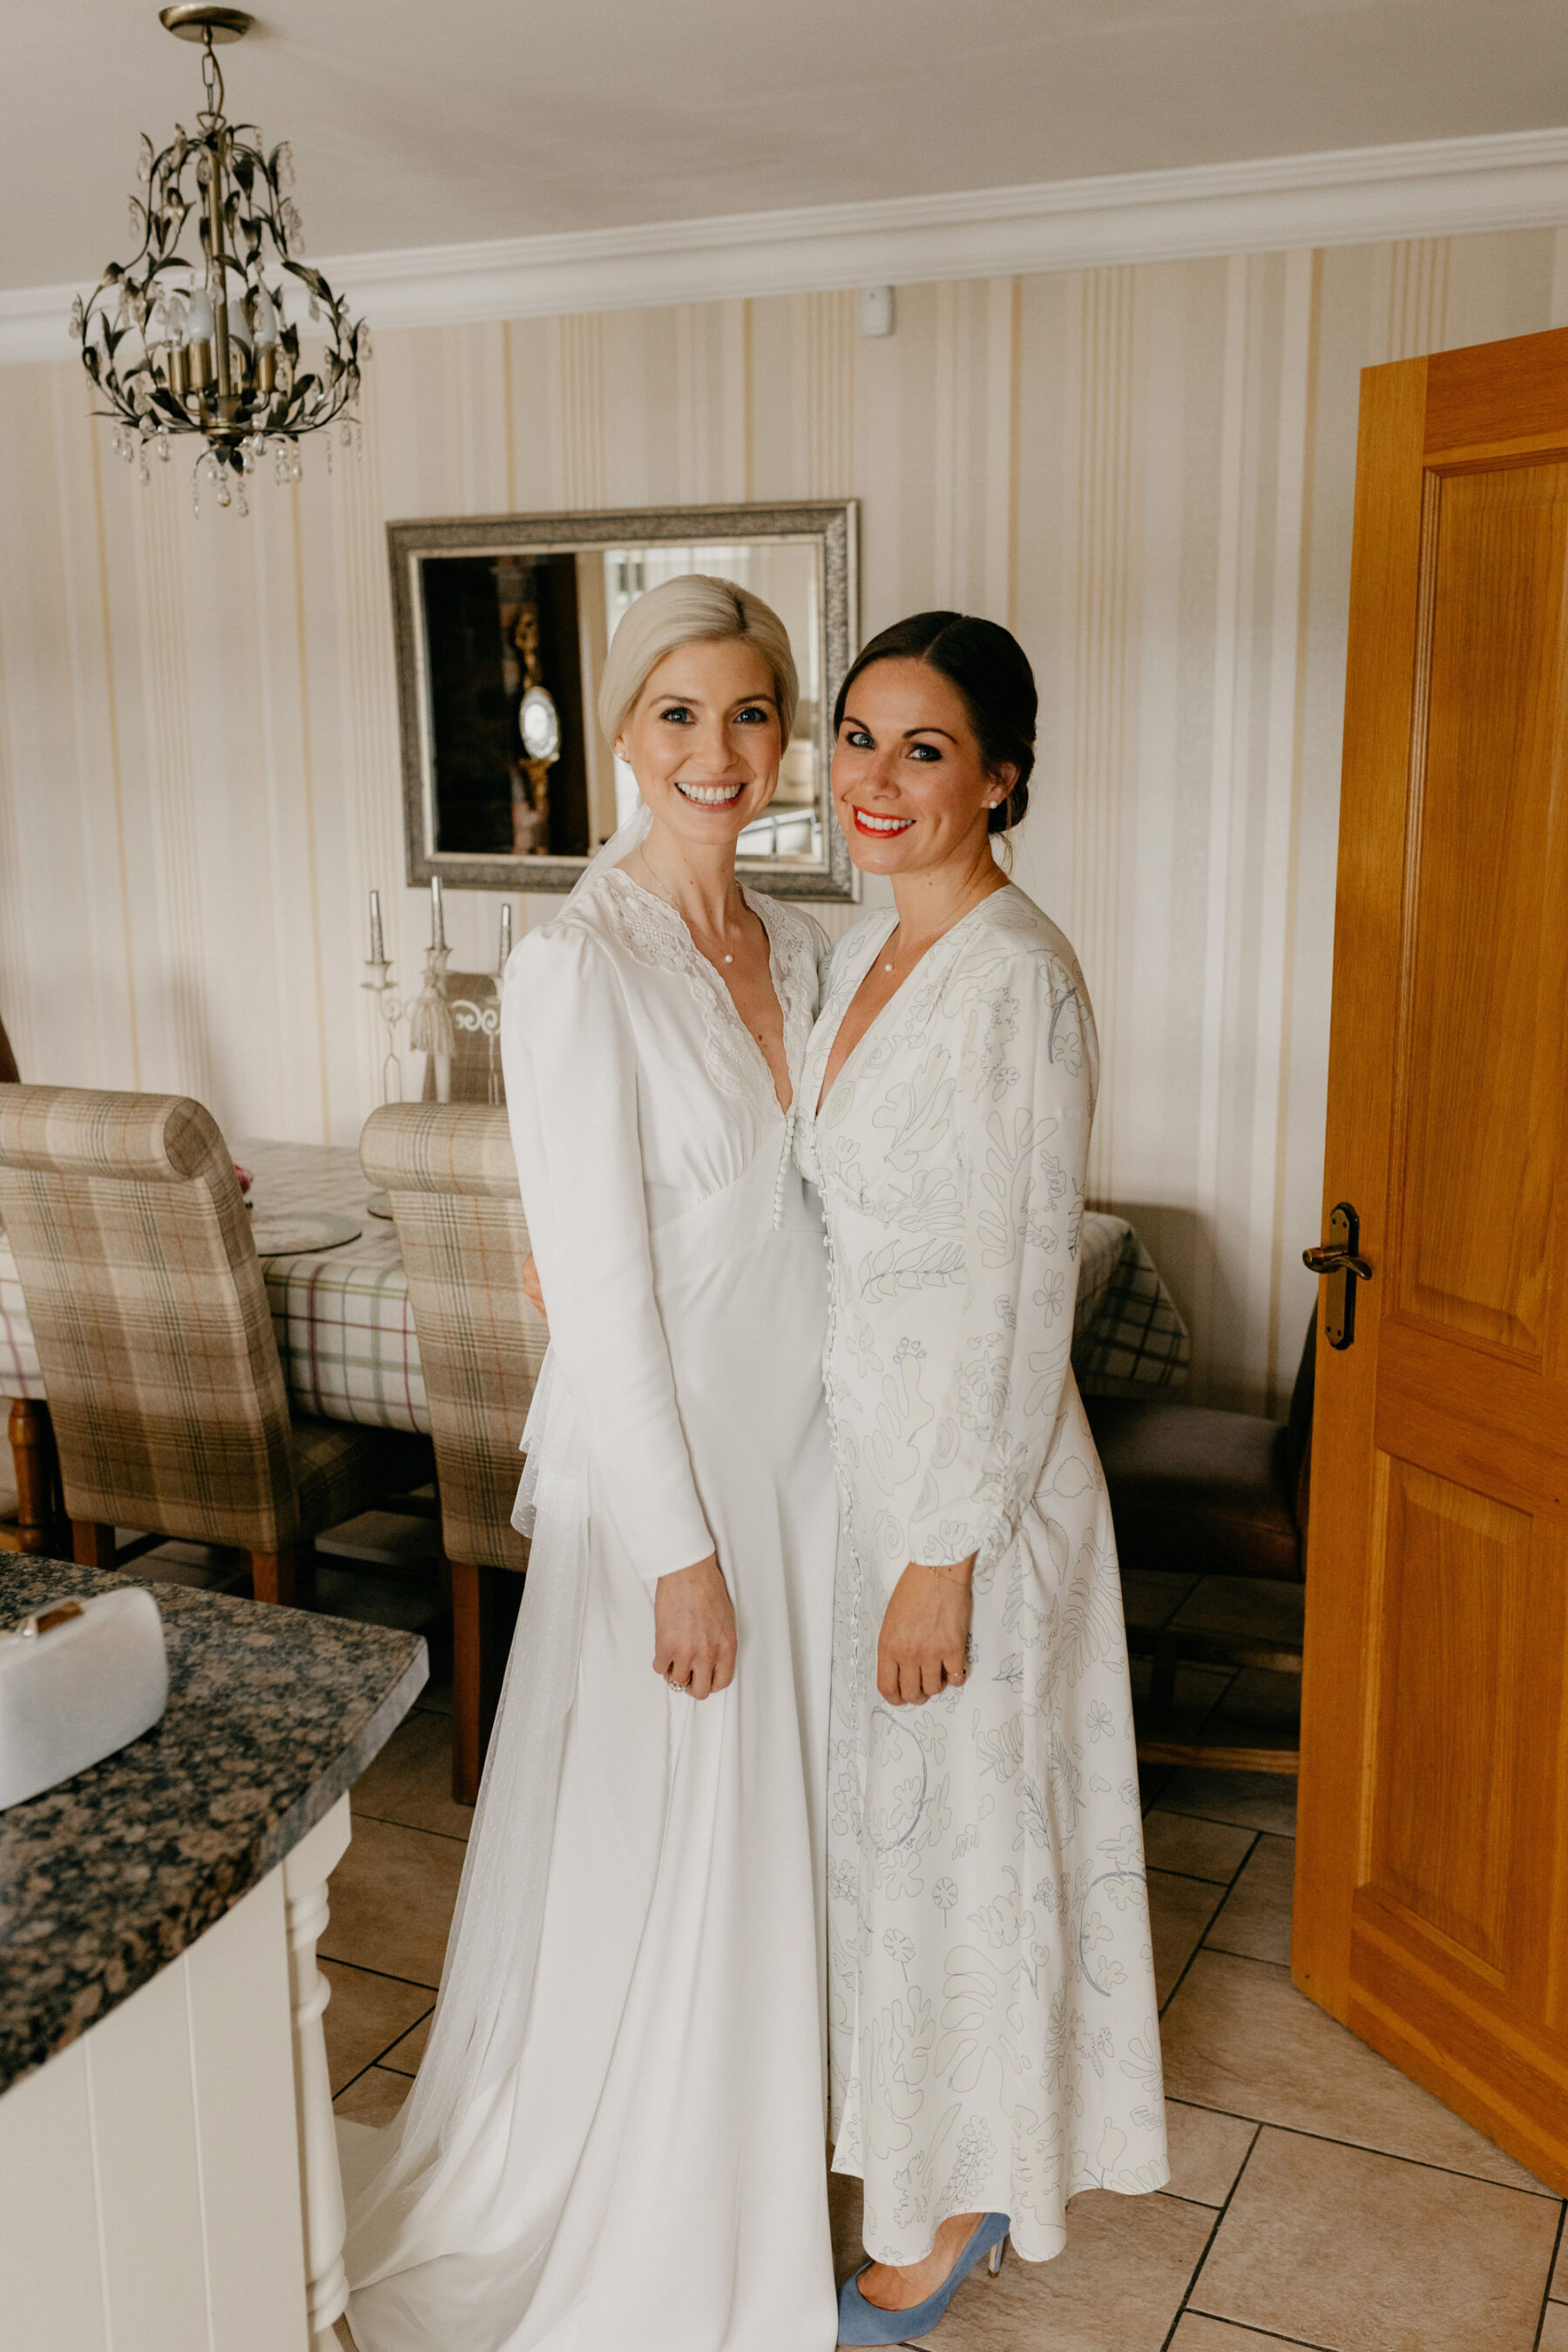 Bride wearing a Rixo wedding dress and bridesmaids wearing a white Rixo dress